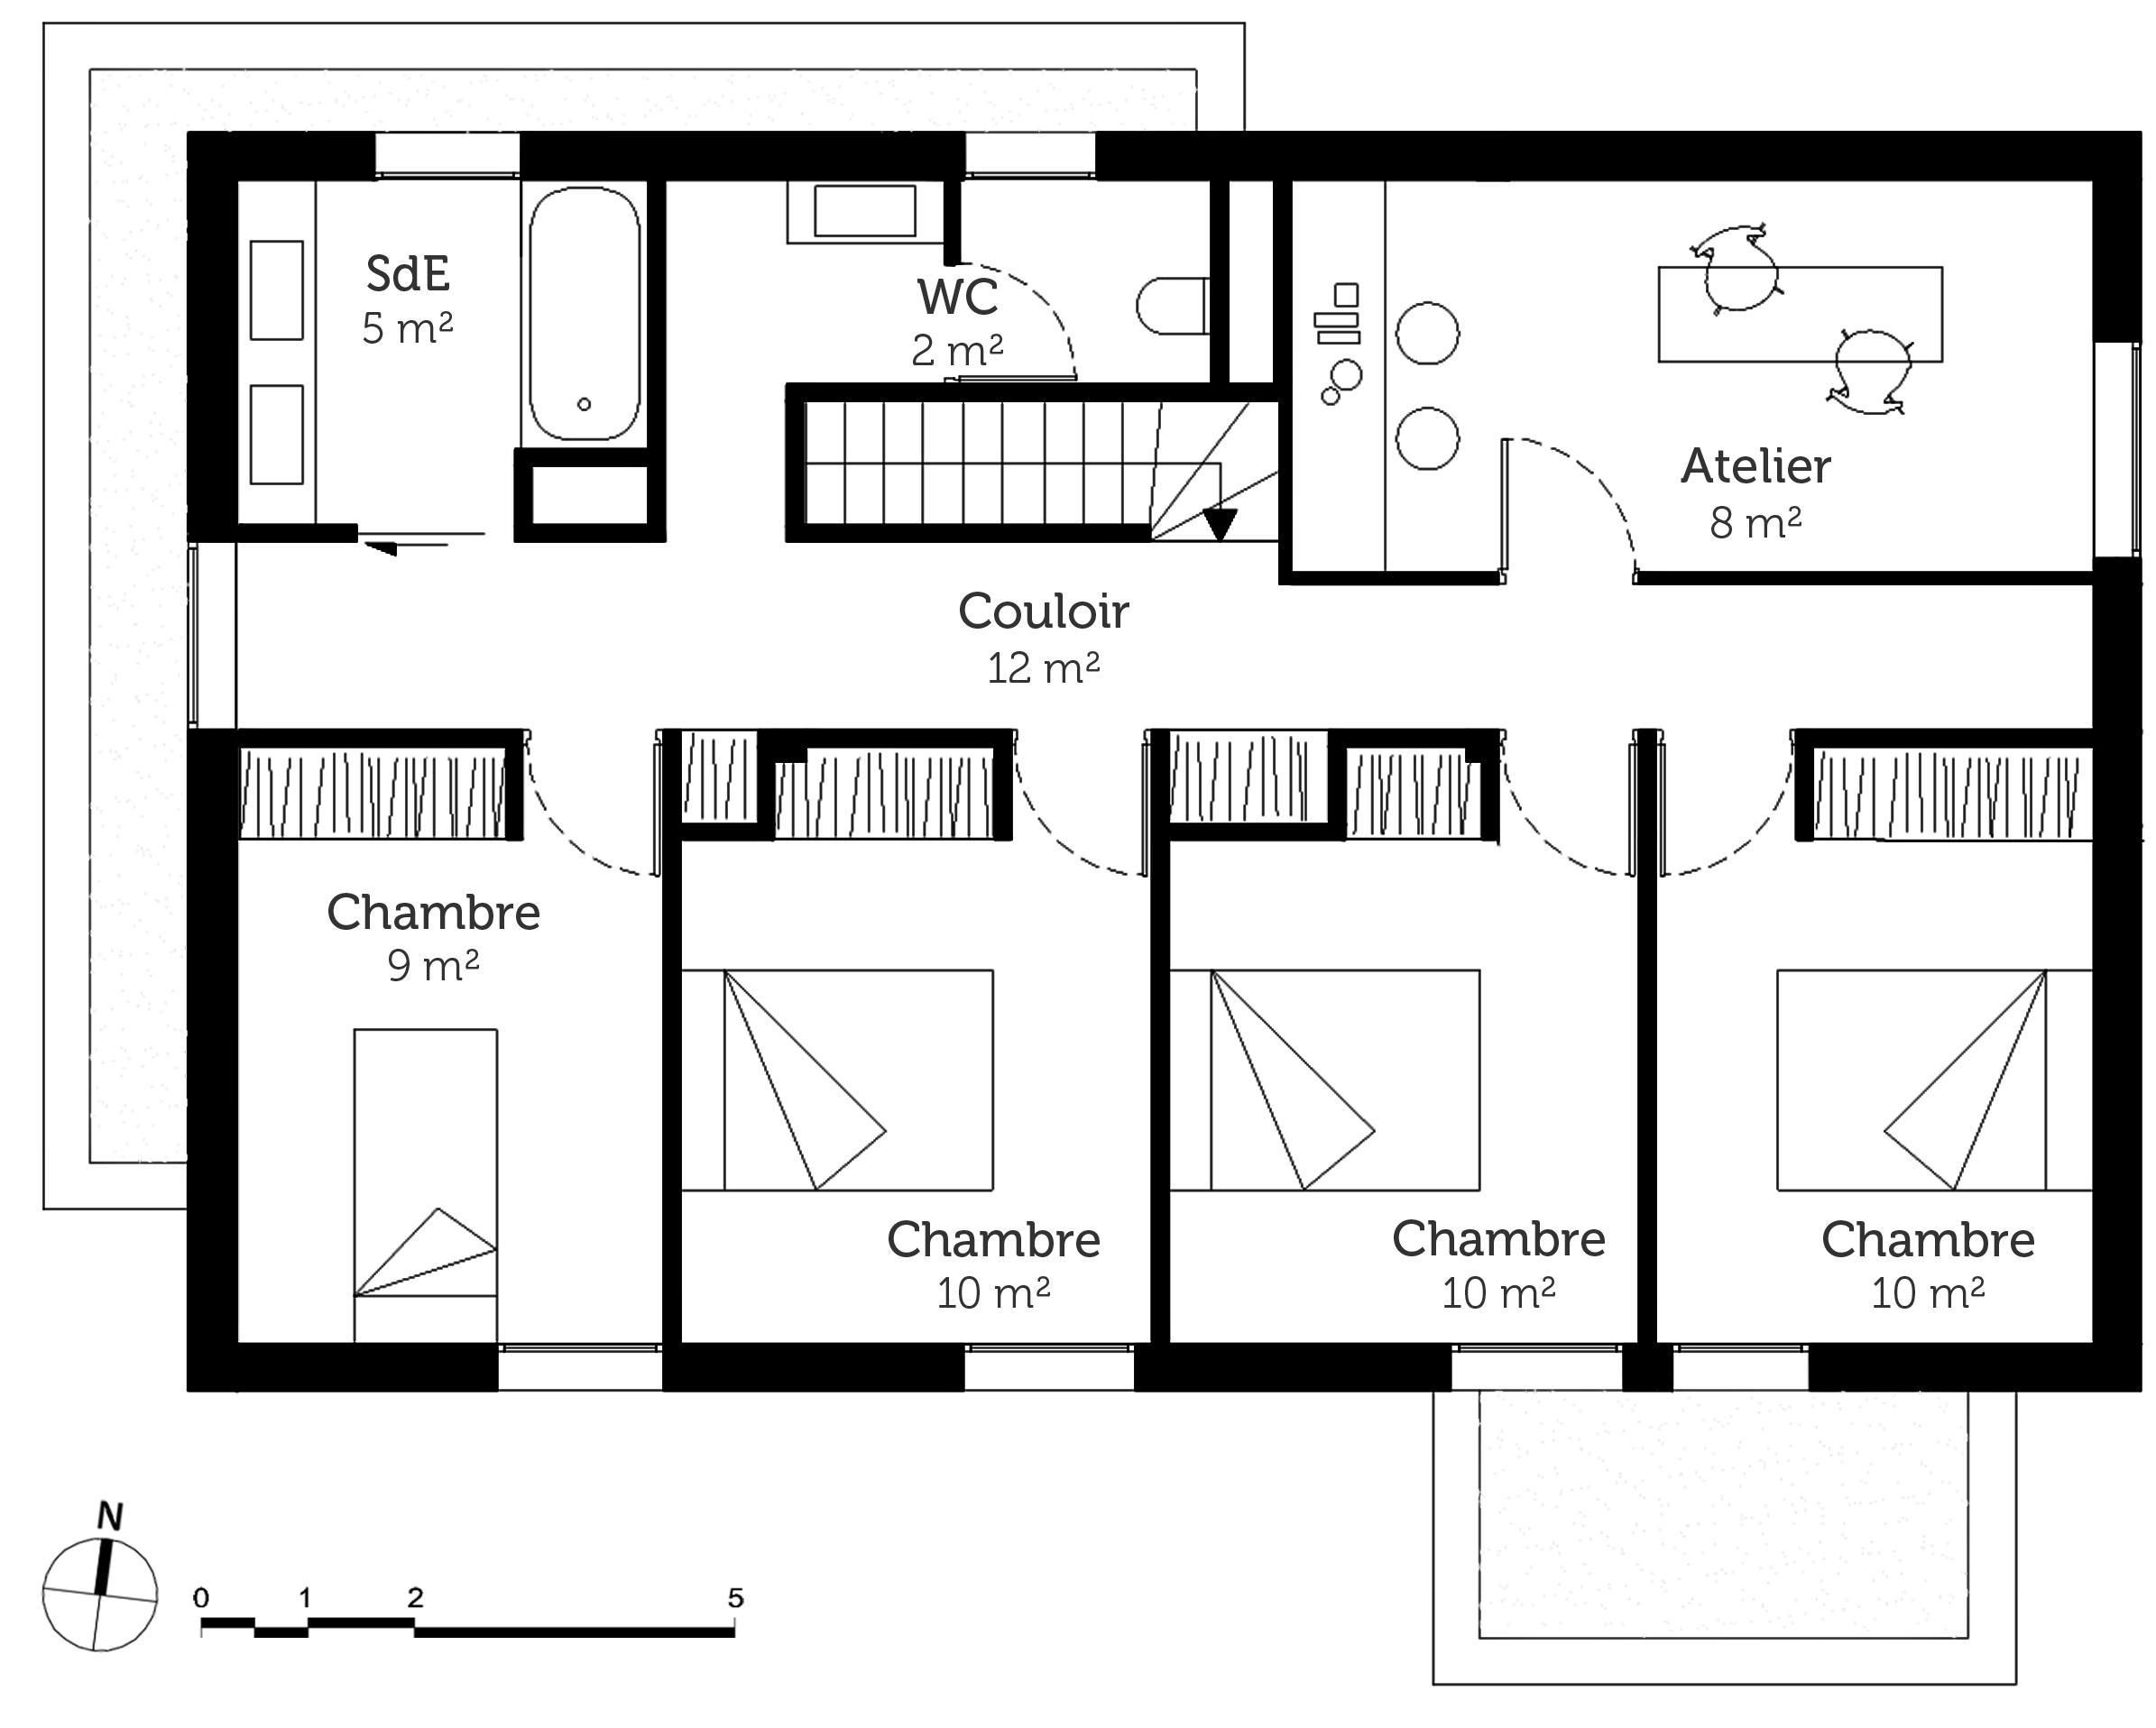 8 Plan Maison 3 Chambres Et Un Bureau  Plan Maison, Maison Plain Pied concernant Plan Maison 3 Chambres 